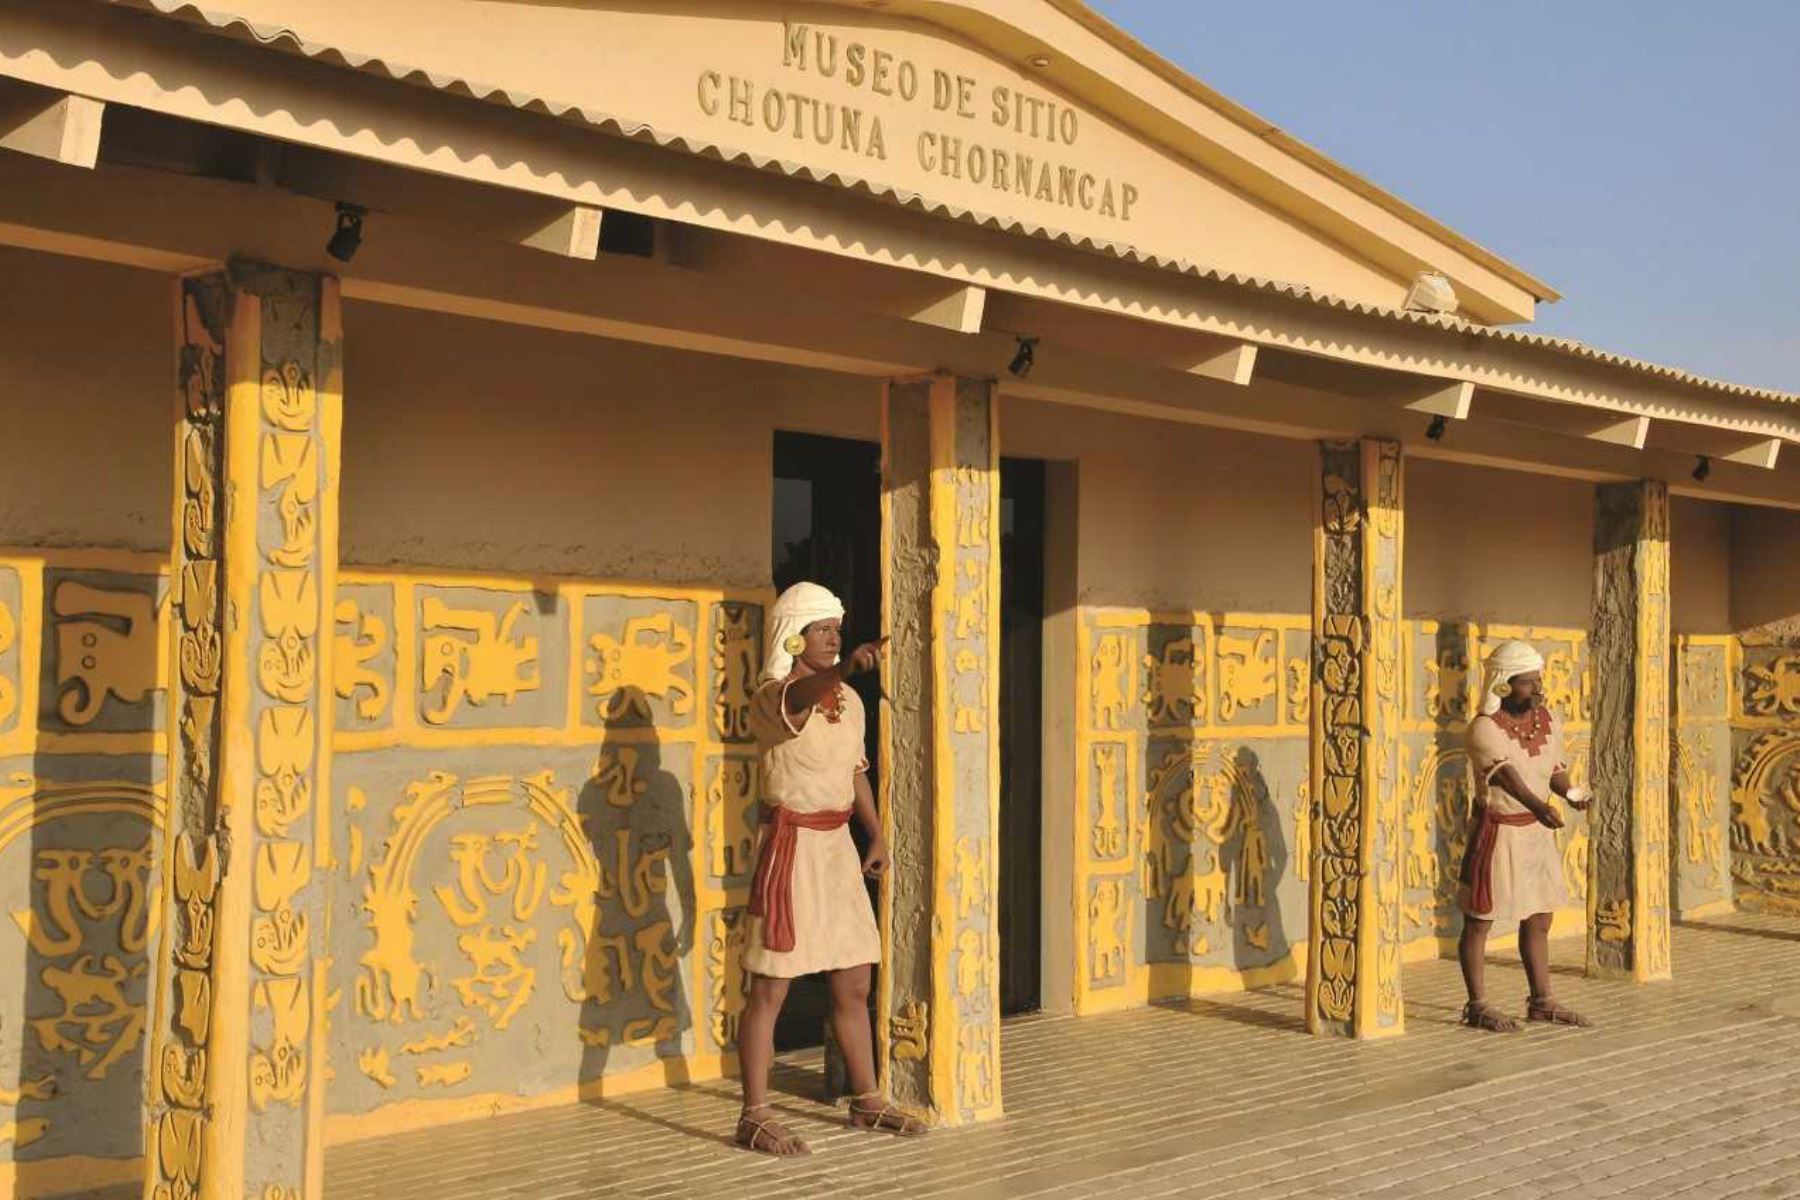 El Museo de Sitio Chotuna Chornancap, ubicado en la región Lambayeque, es uno de los recintos culturales que está autorizado a recibir visitantes con aforo limitado y cumpliendo el protocolo sanitario para evitar el covid-19. ANDINA/Difusión